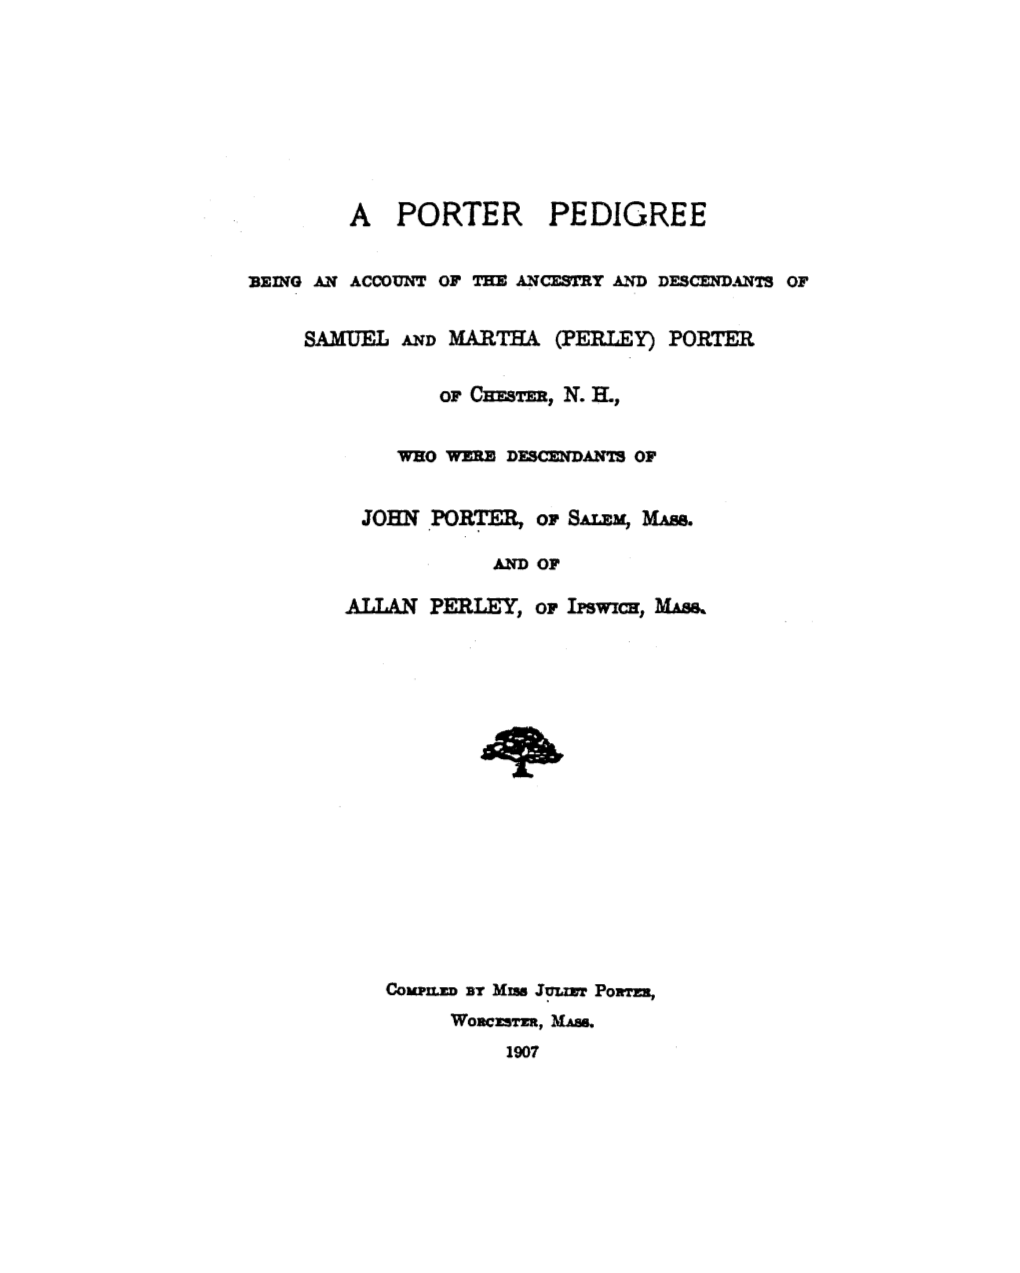 A Porter Pedigree